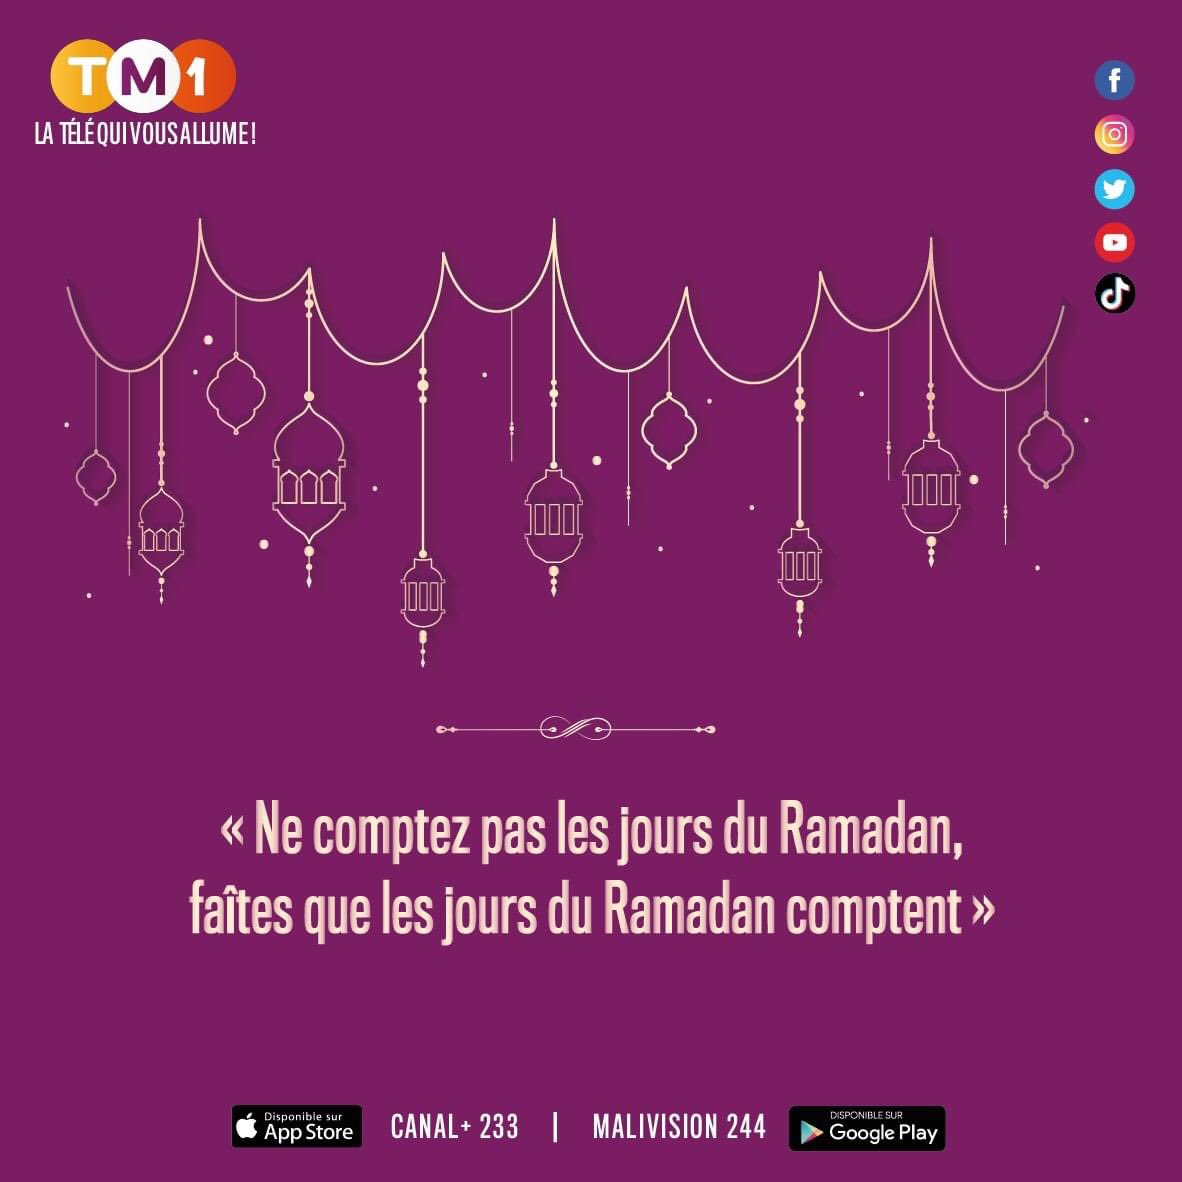 Bon mois de Ramadan à tous! #Ramadan #TM1